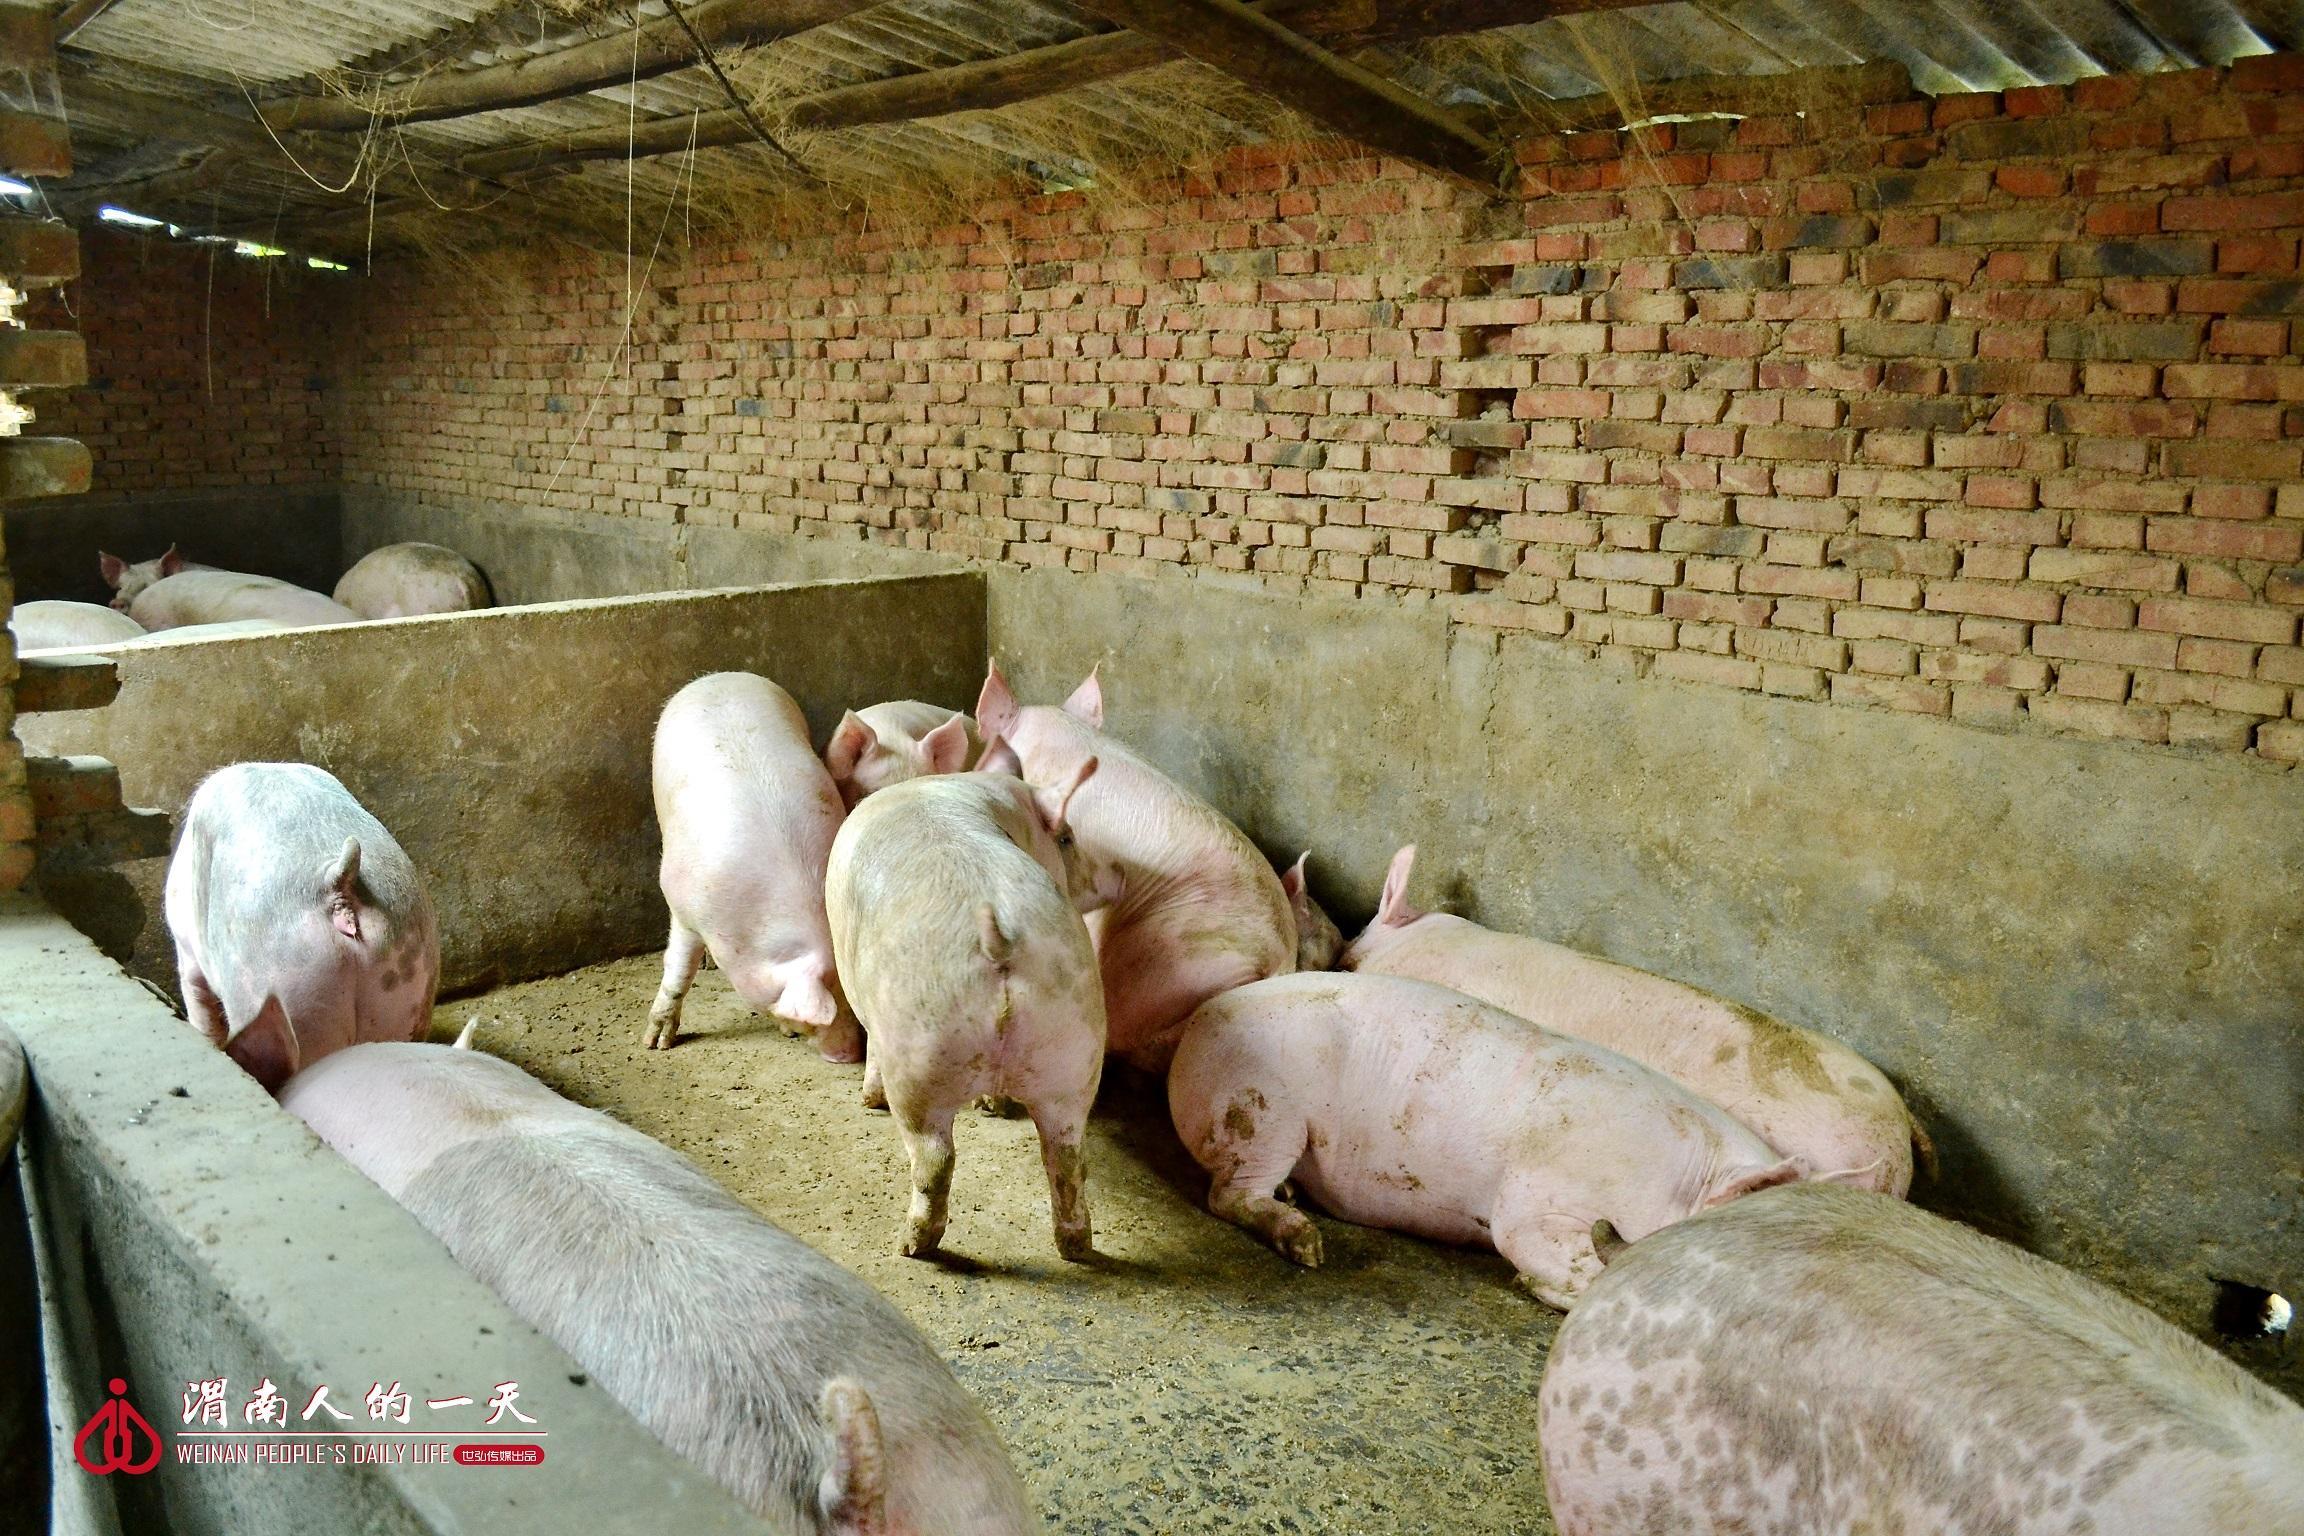 和这些被"困"在圈里的猪同志们不同,可以享受自由生活的鸡在猪圈的